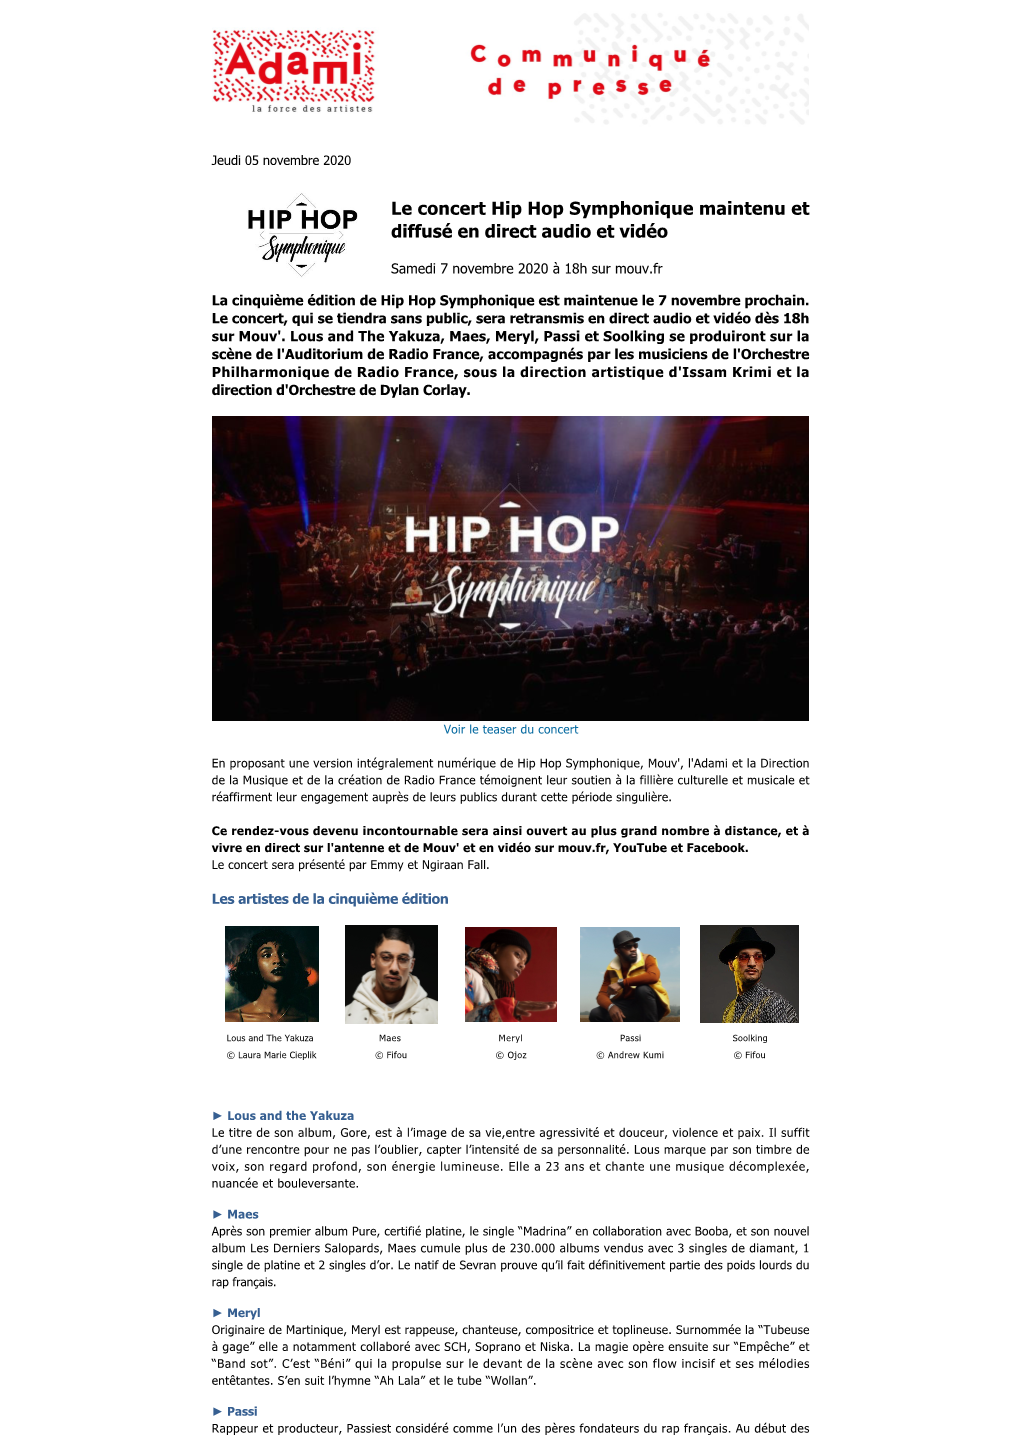 Le Concert Hip Hop Symphonique Maintenu Et Diffusé En Direct Audio Et Vidéo